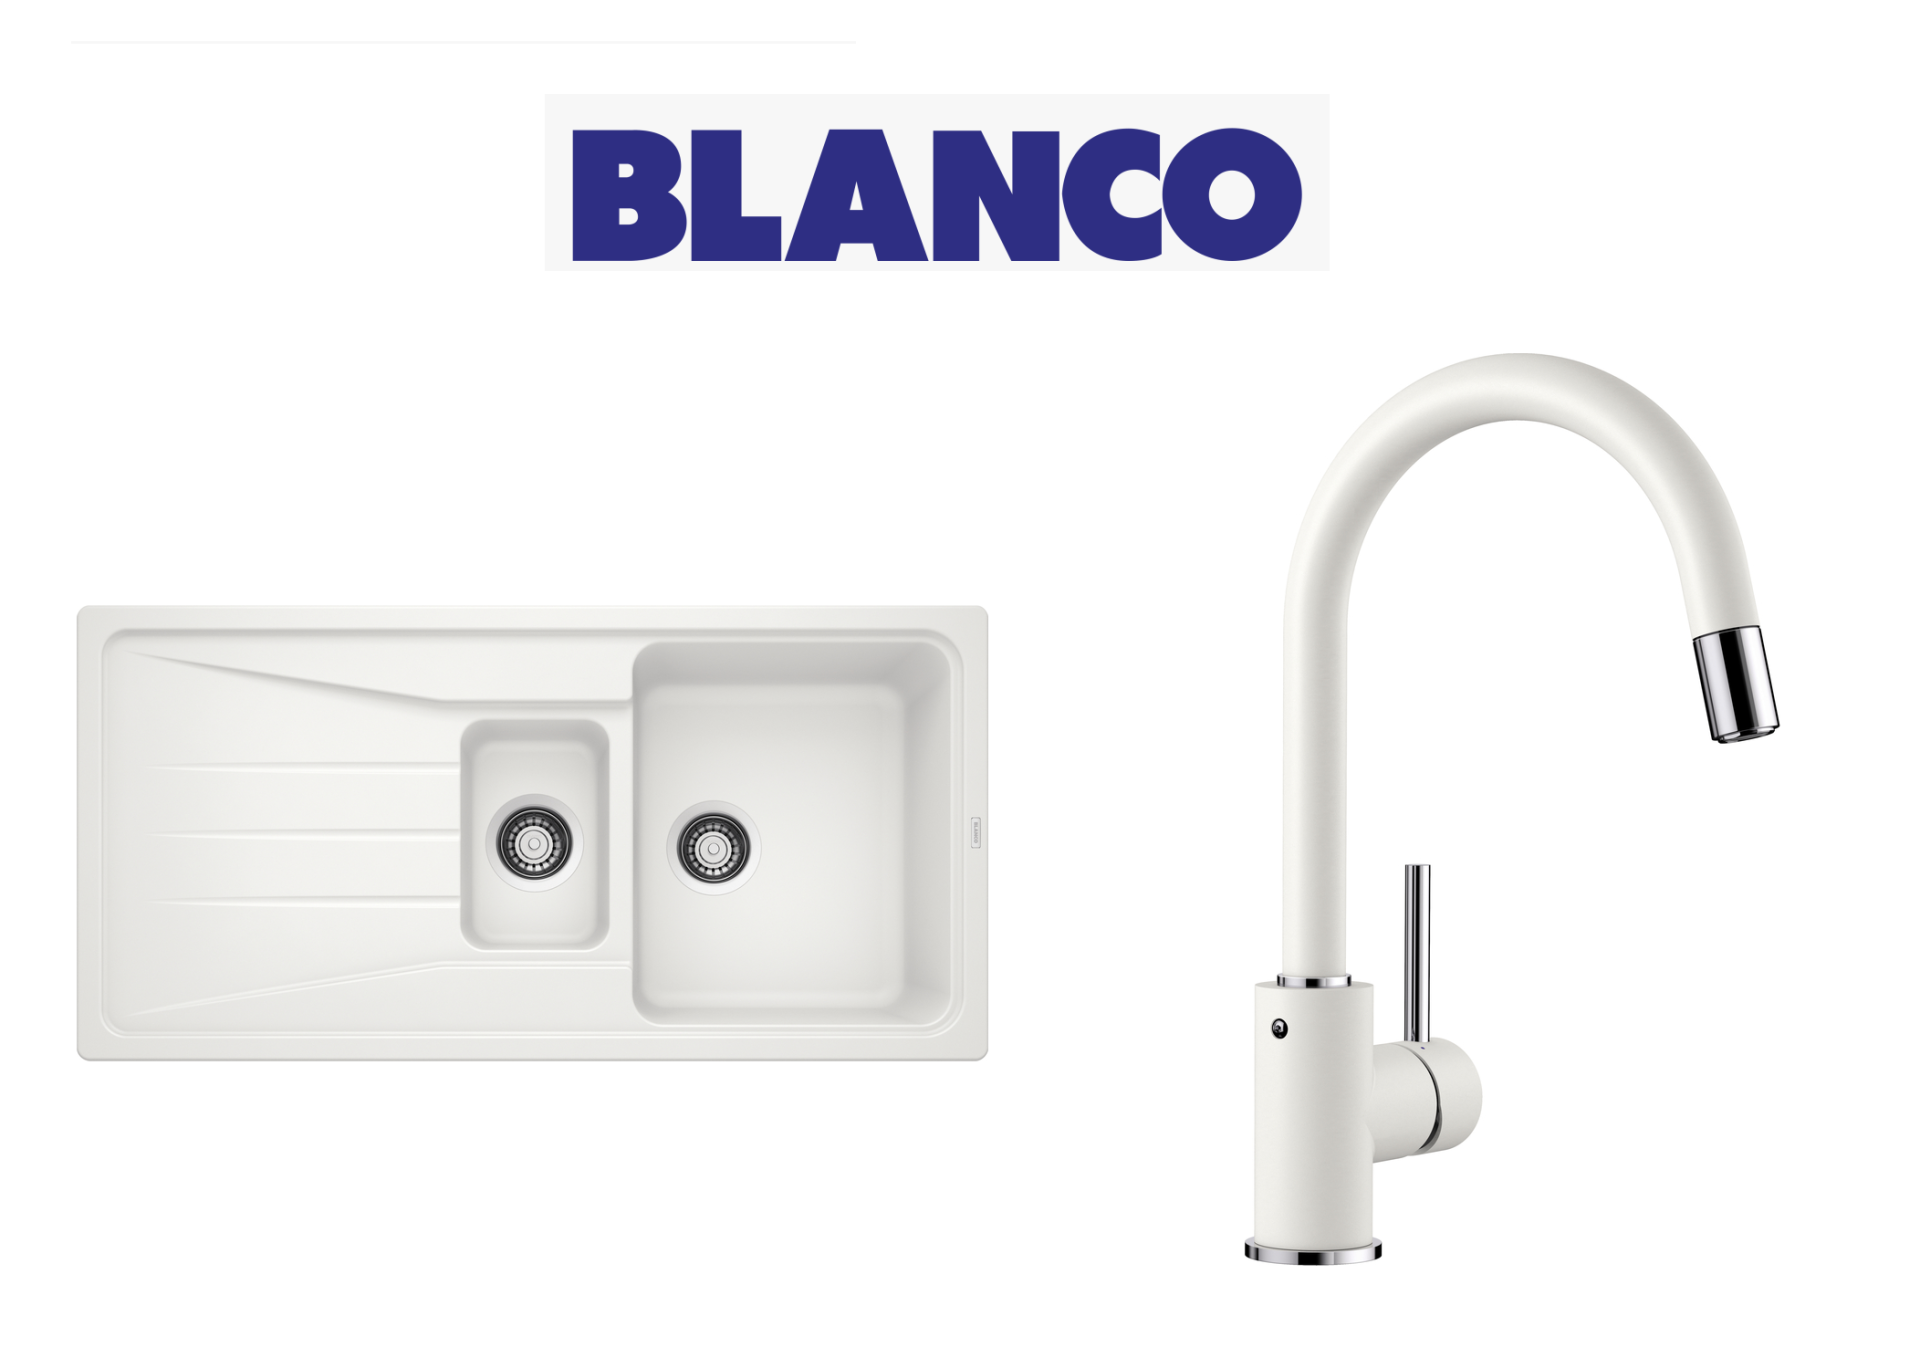 Blanco Sona 6 S Tezgah Üstü 1.5 Gozlu Beyaz Evye + Blanco Mida  Beyaz Spiralsiz Armatur Kampanyası